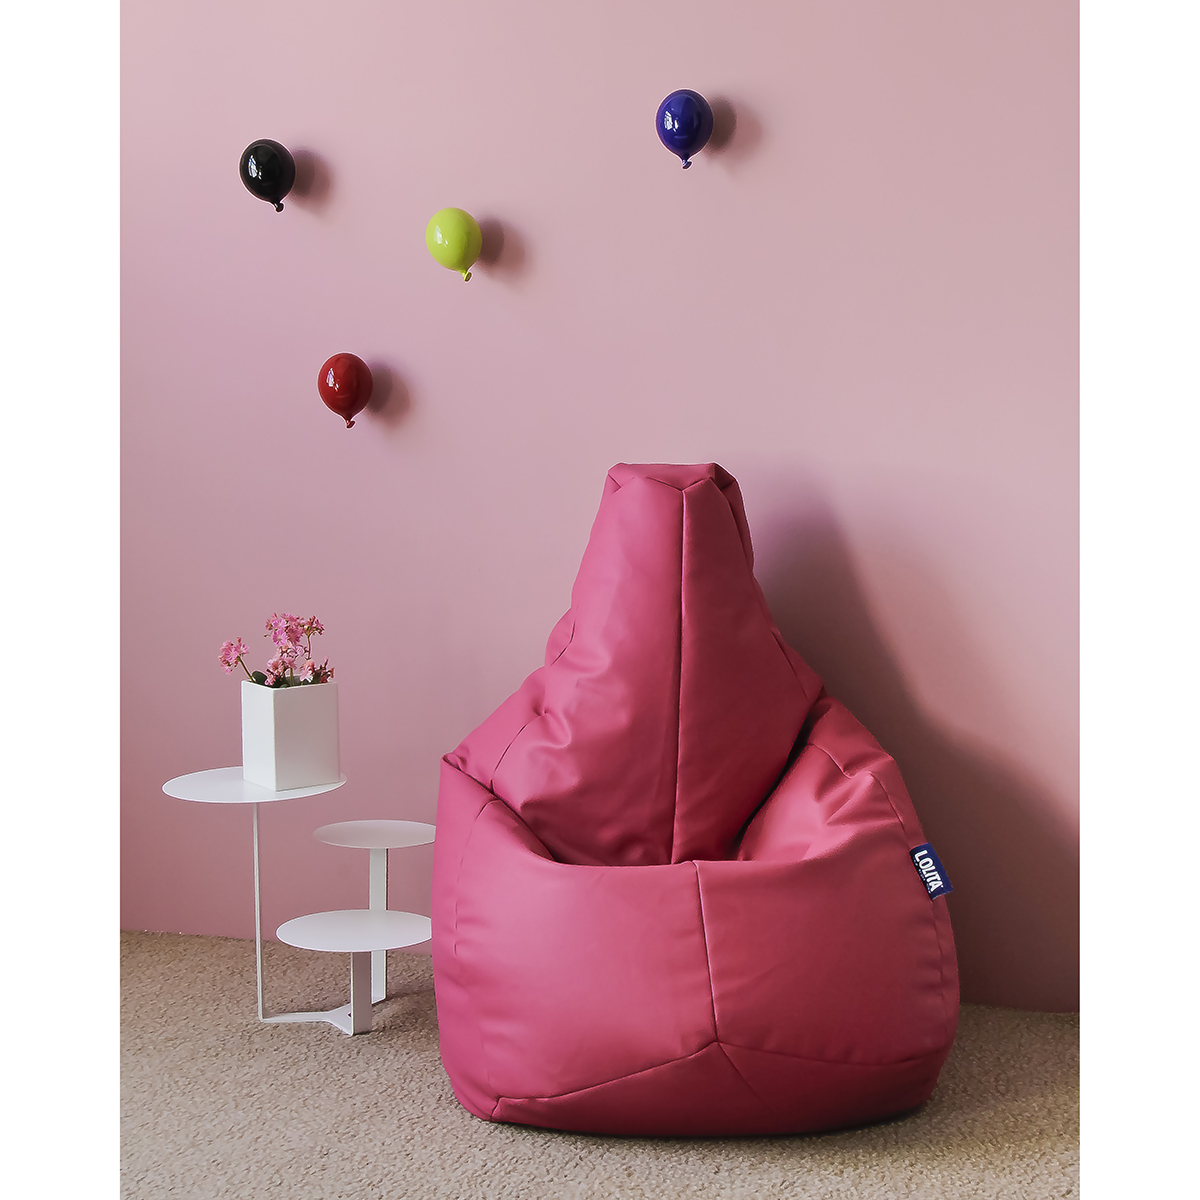 poltrona a sacco in morbida ecopelle color rosa ortensia in un angolo di cameretta decorato con palloncini di ceramica a muro e tavolino a tre ripiani bianco